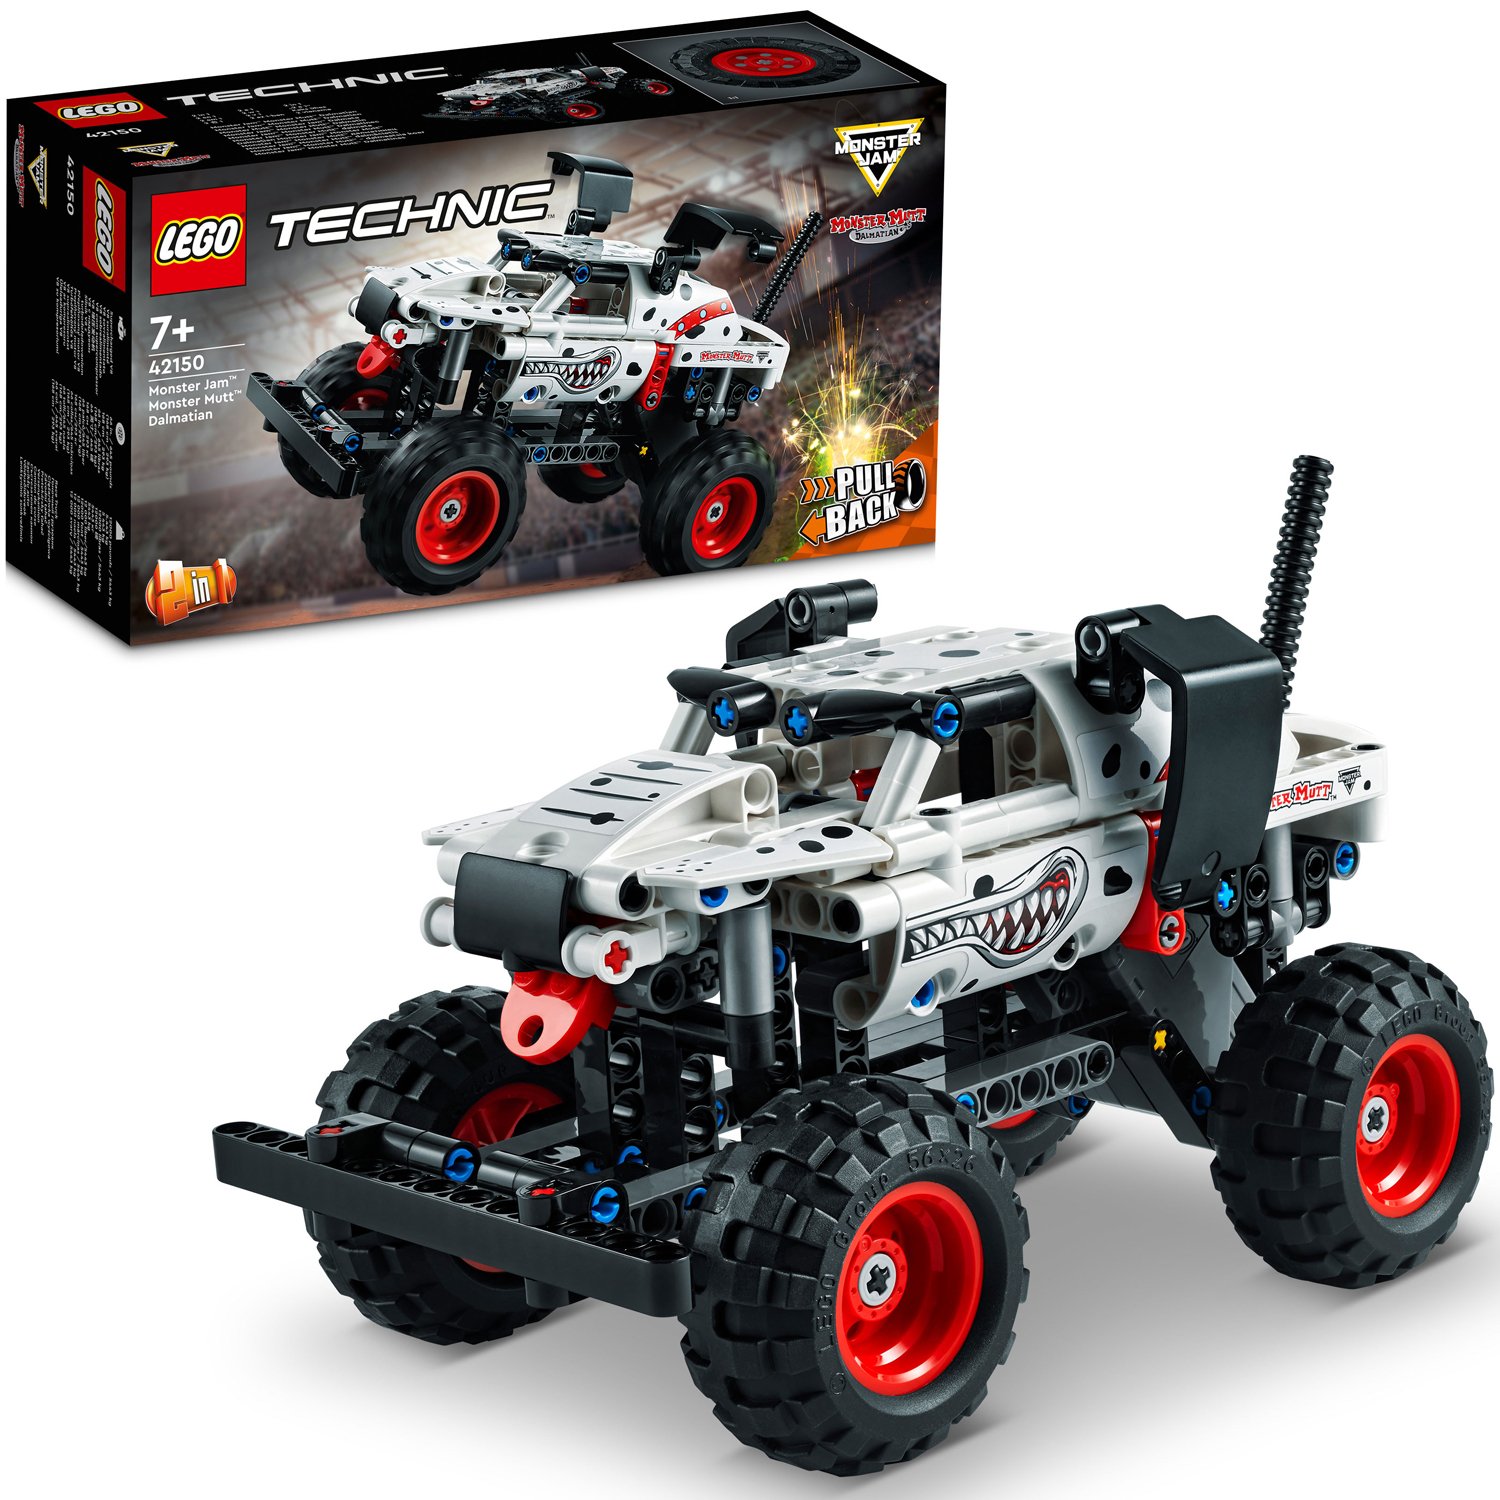 LEGO Technic - Monster Jam,Monster Mutt,Dalmatian